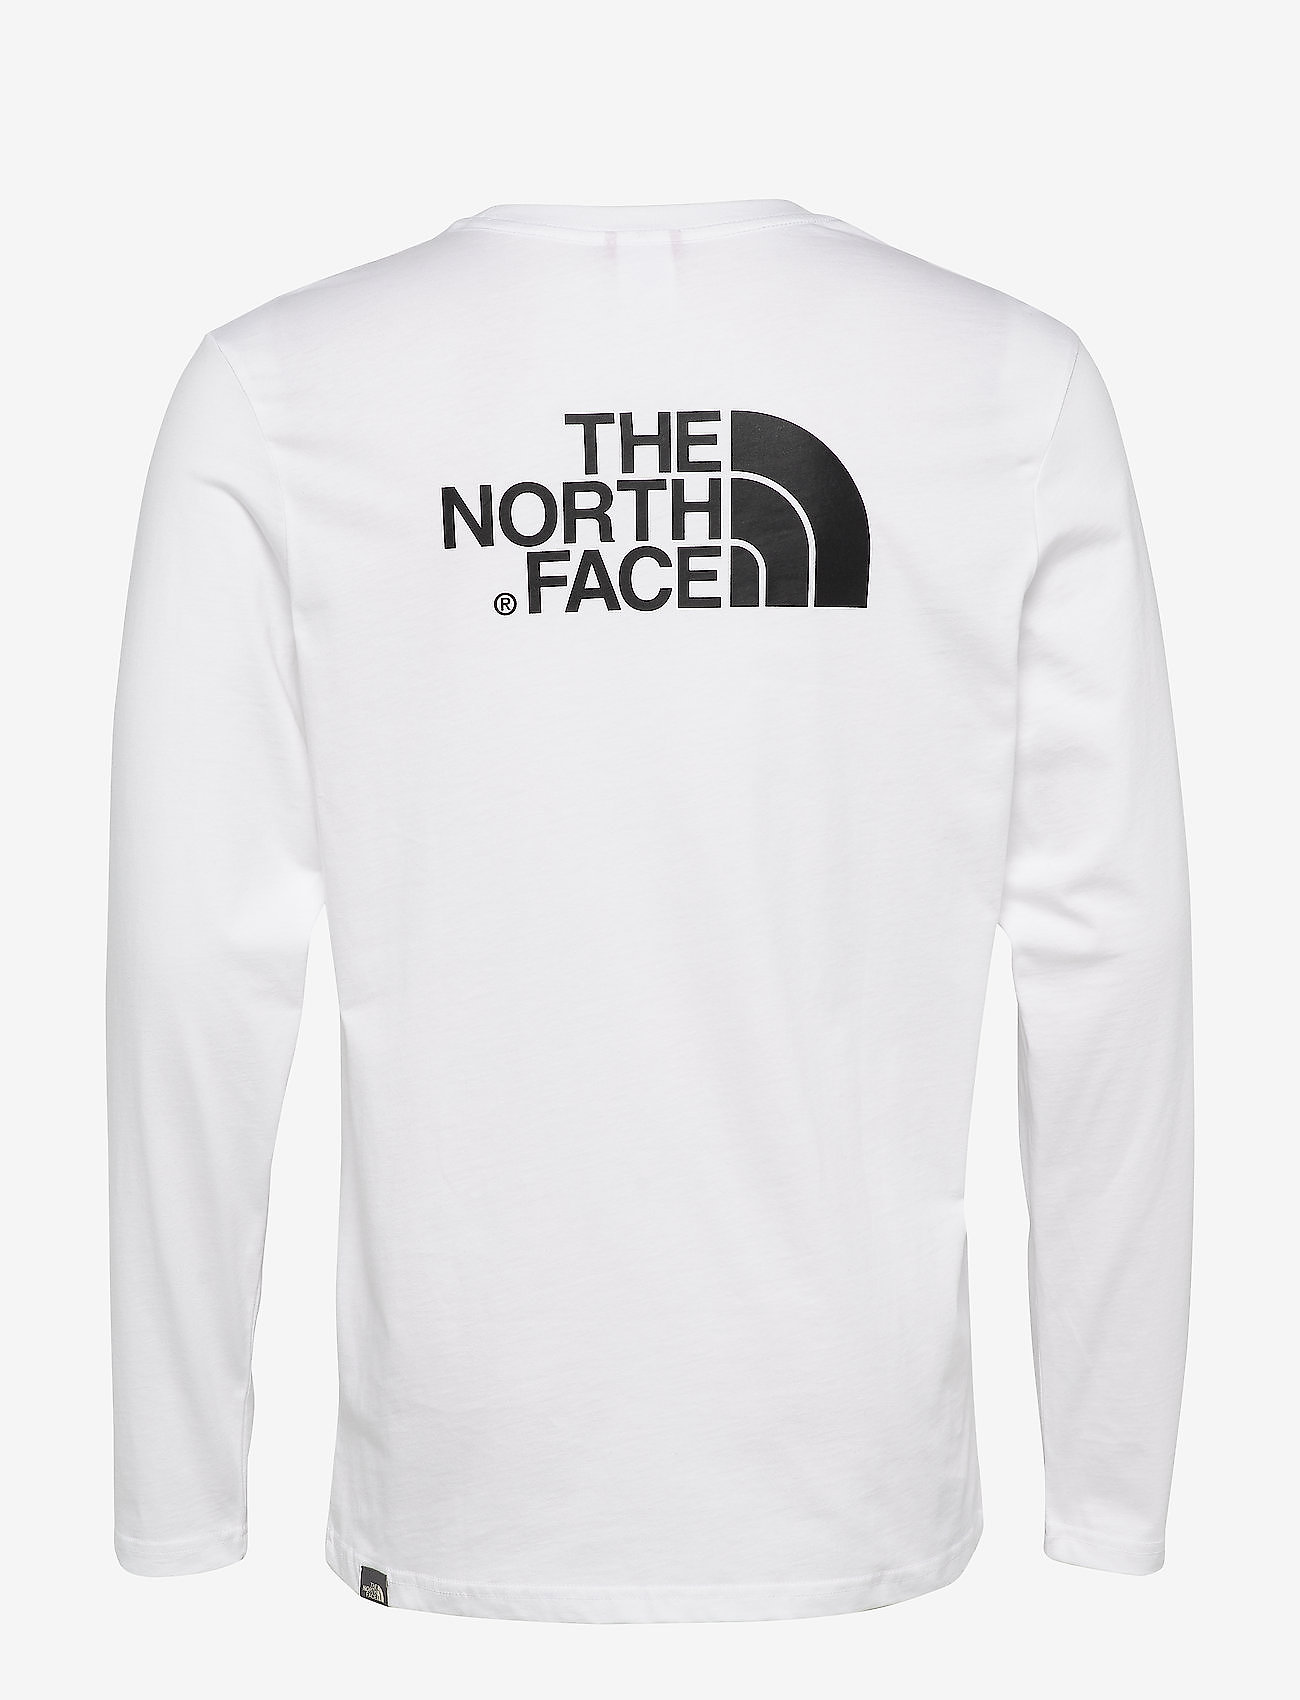 The North Face - M L/S EASY TEE - EU - tnf white - 1